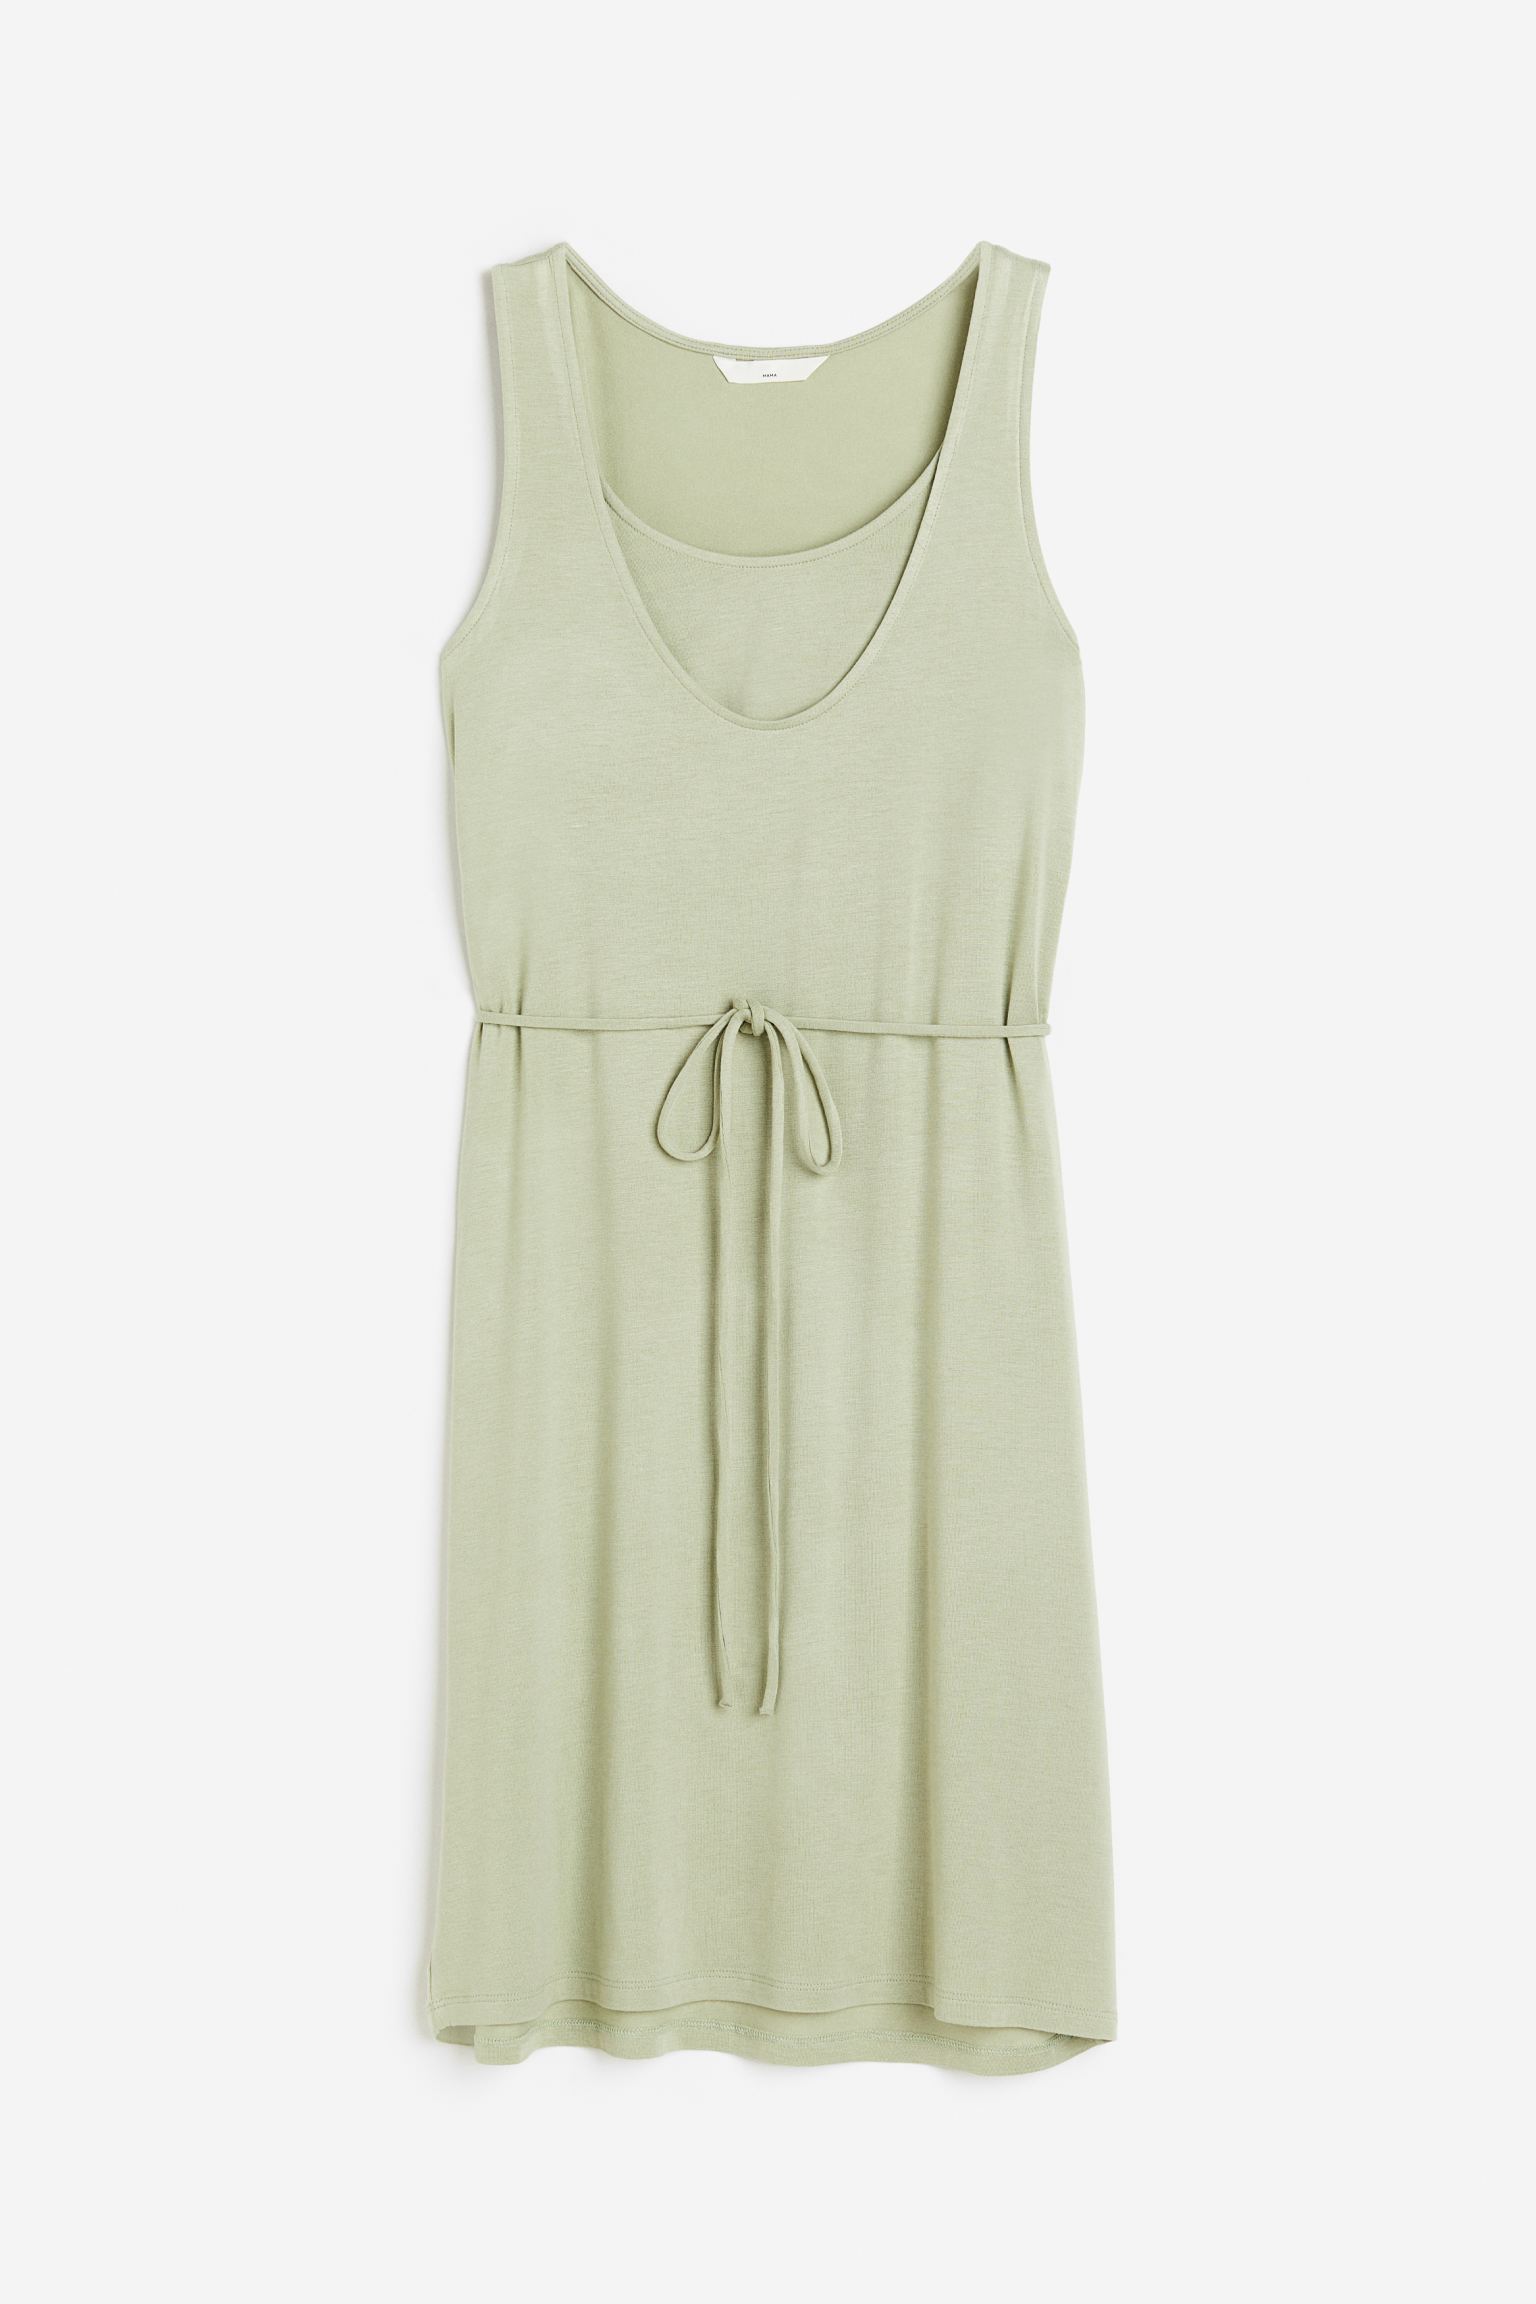 Платье женское H&M 1116459001 зеленое XS (доставка из-за рубежа)